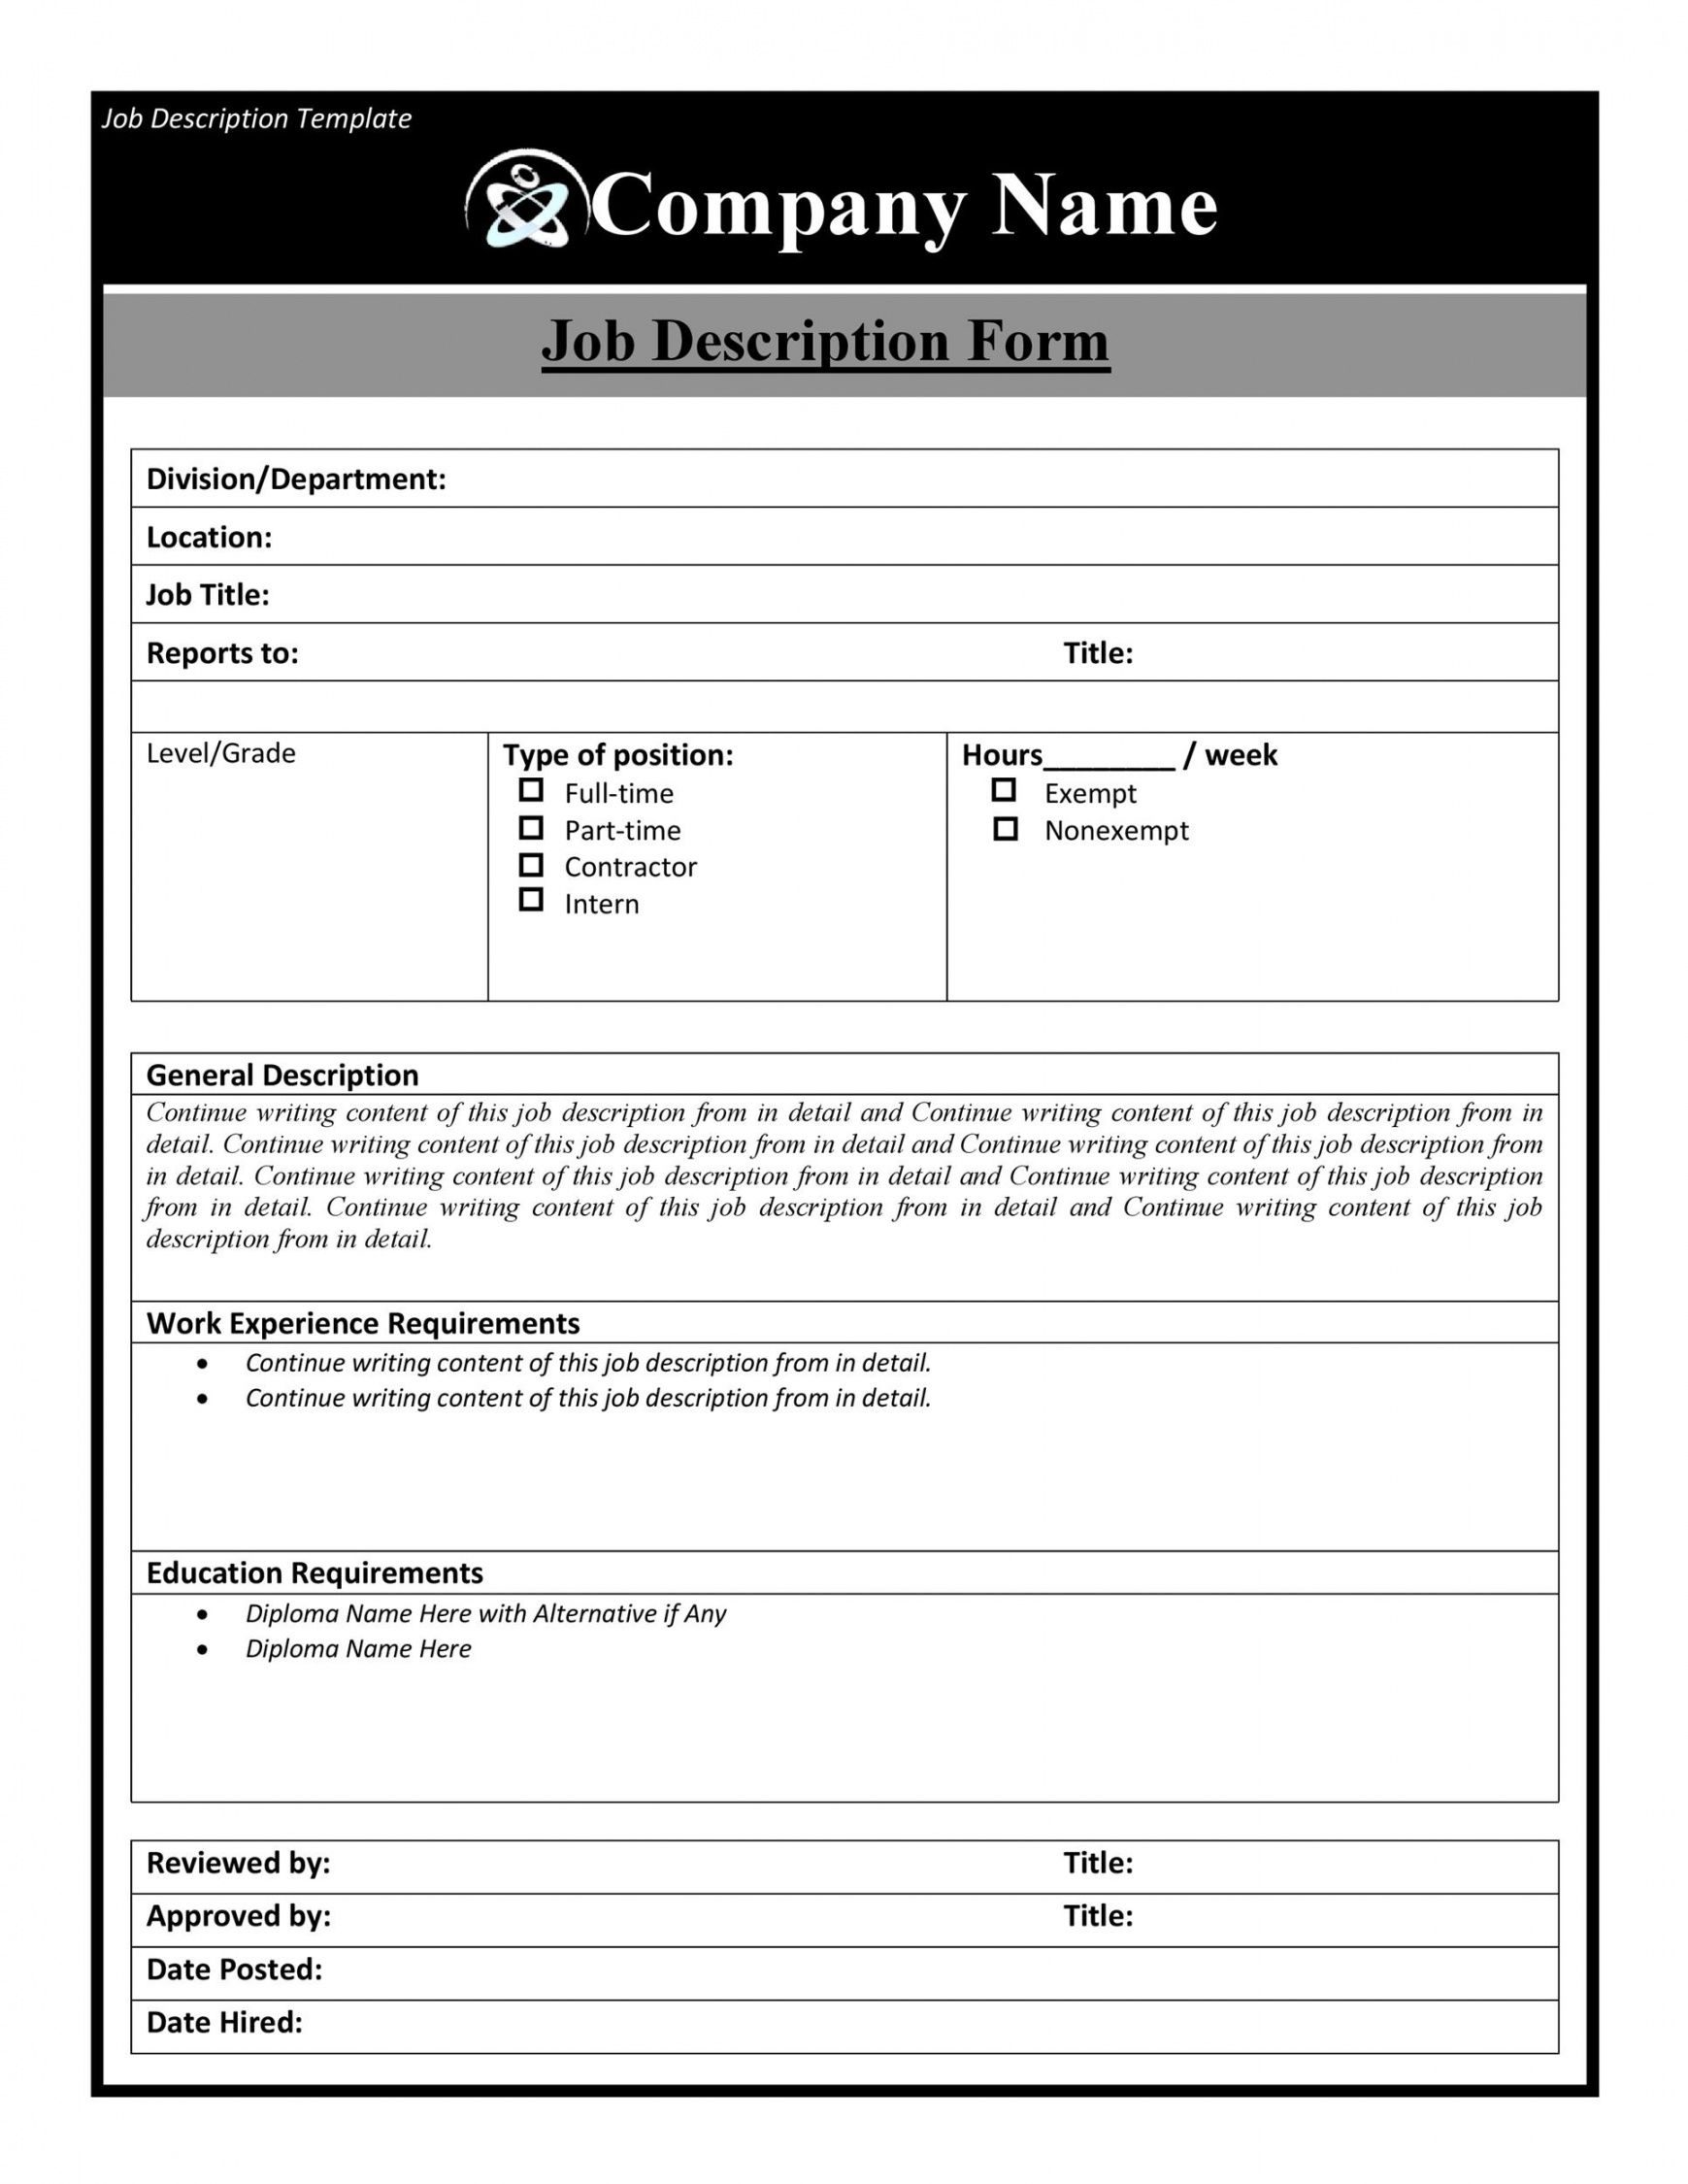 47 job description templates &amp; examples ᐅ templatelab simple job description template